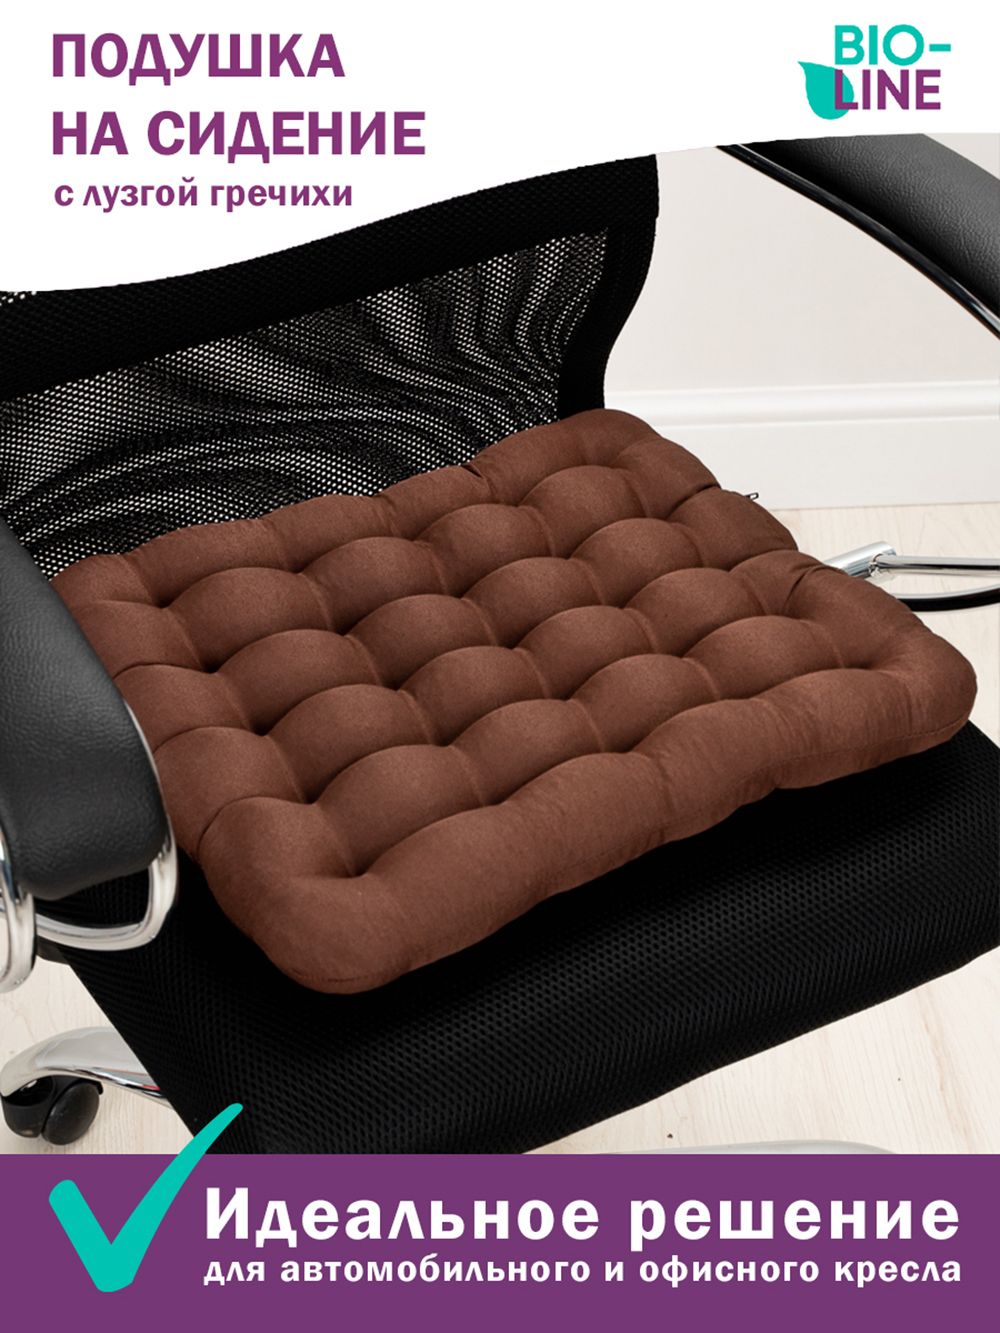 Подушка на стул Bio-Line с гречневой лузгой PSG25 - шоколадный